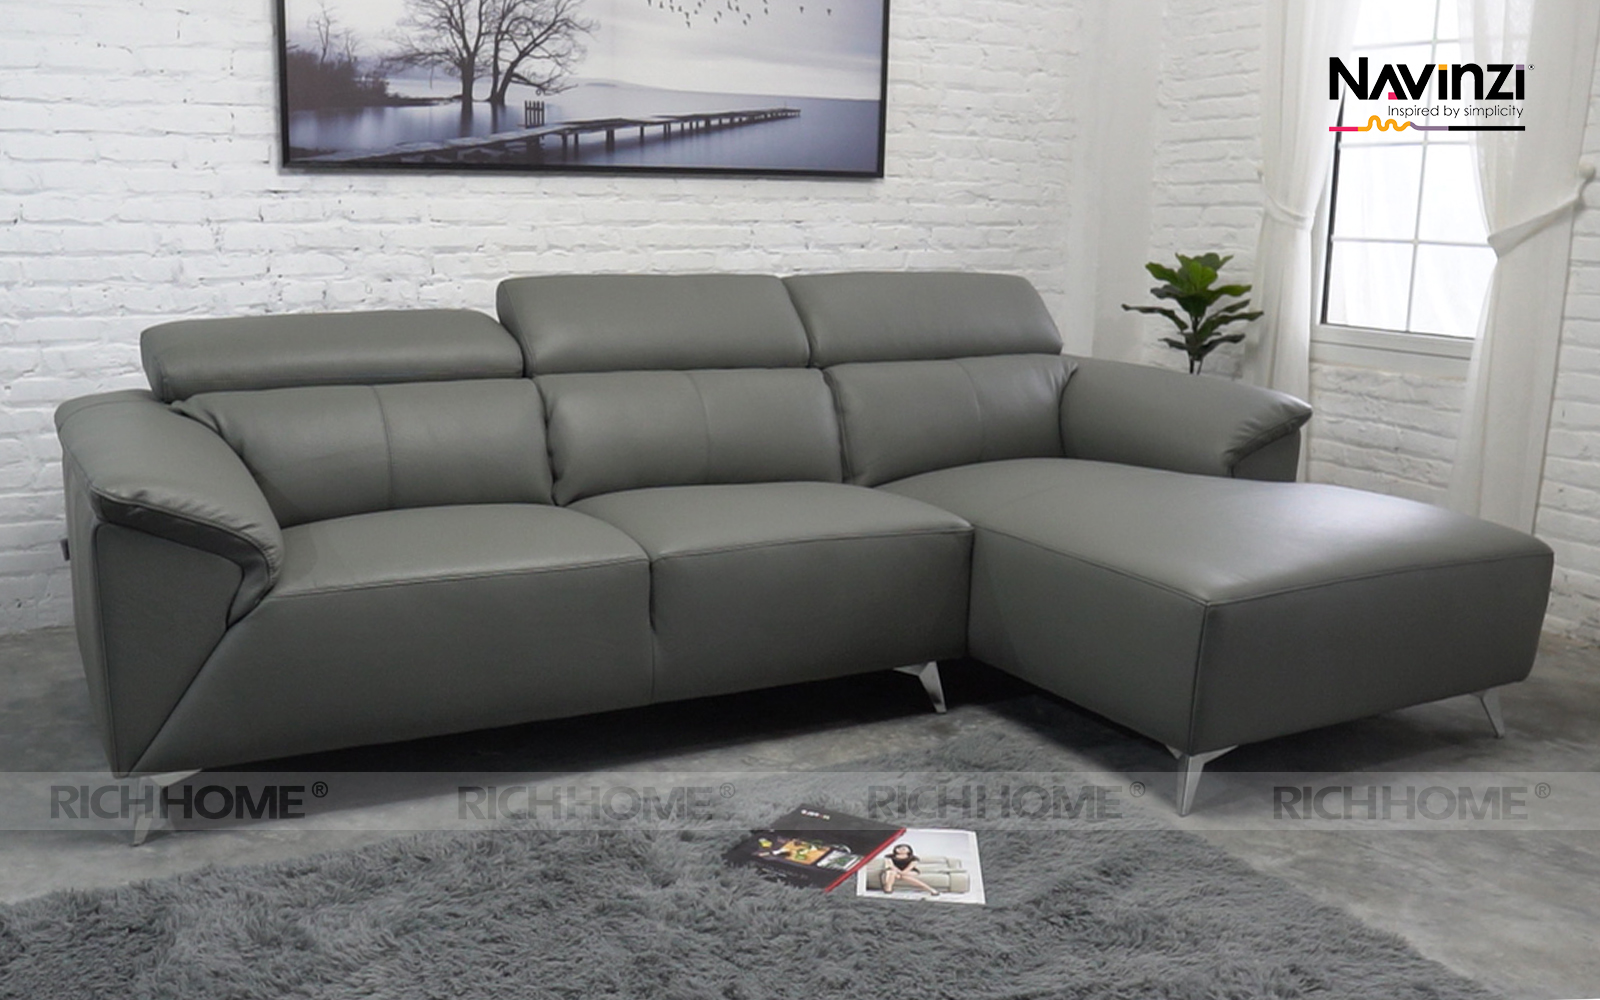 Cửa hàng bán ghế sofa nhập khẩu tại Hà Nội chính hãng - Ảnh 5